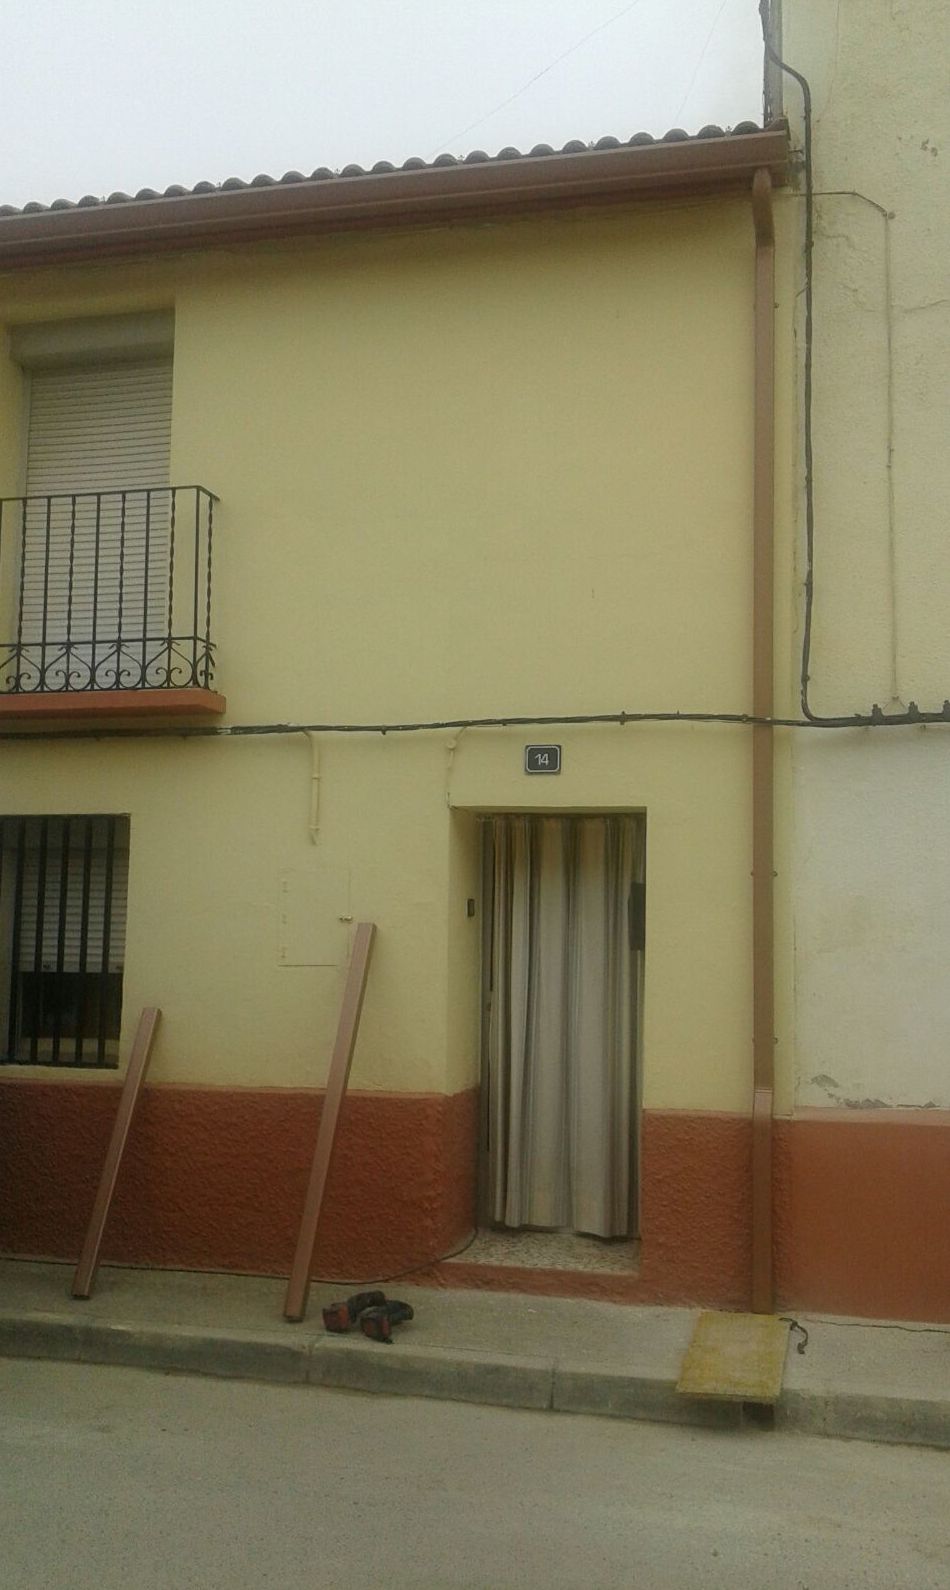 Instalacion de canalones en fachada